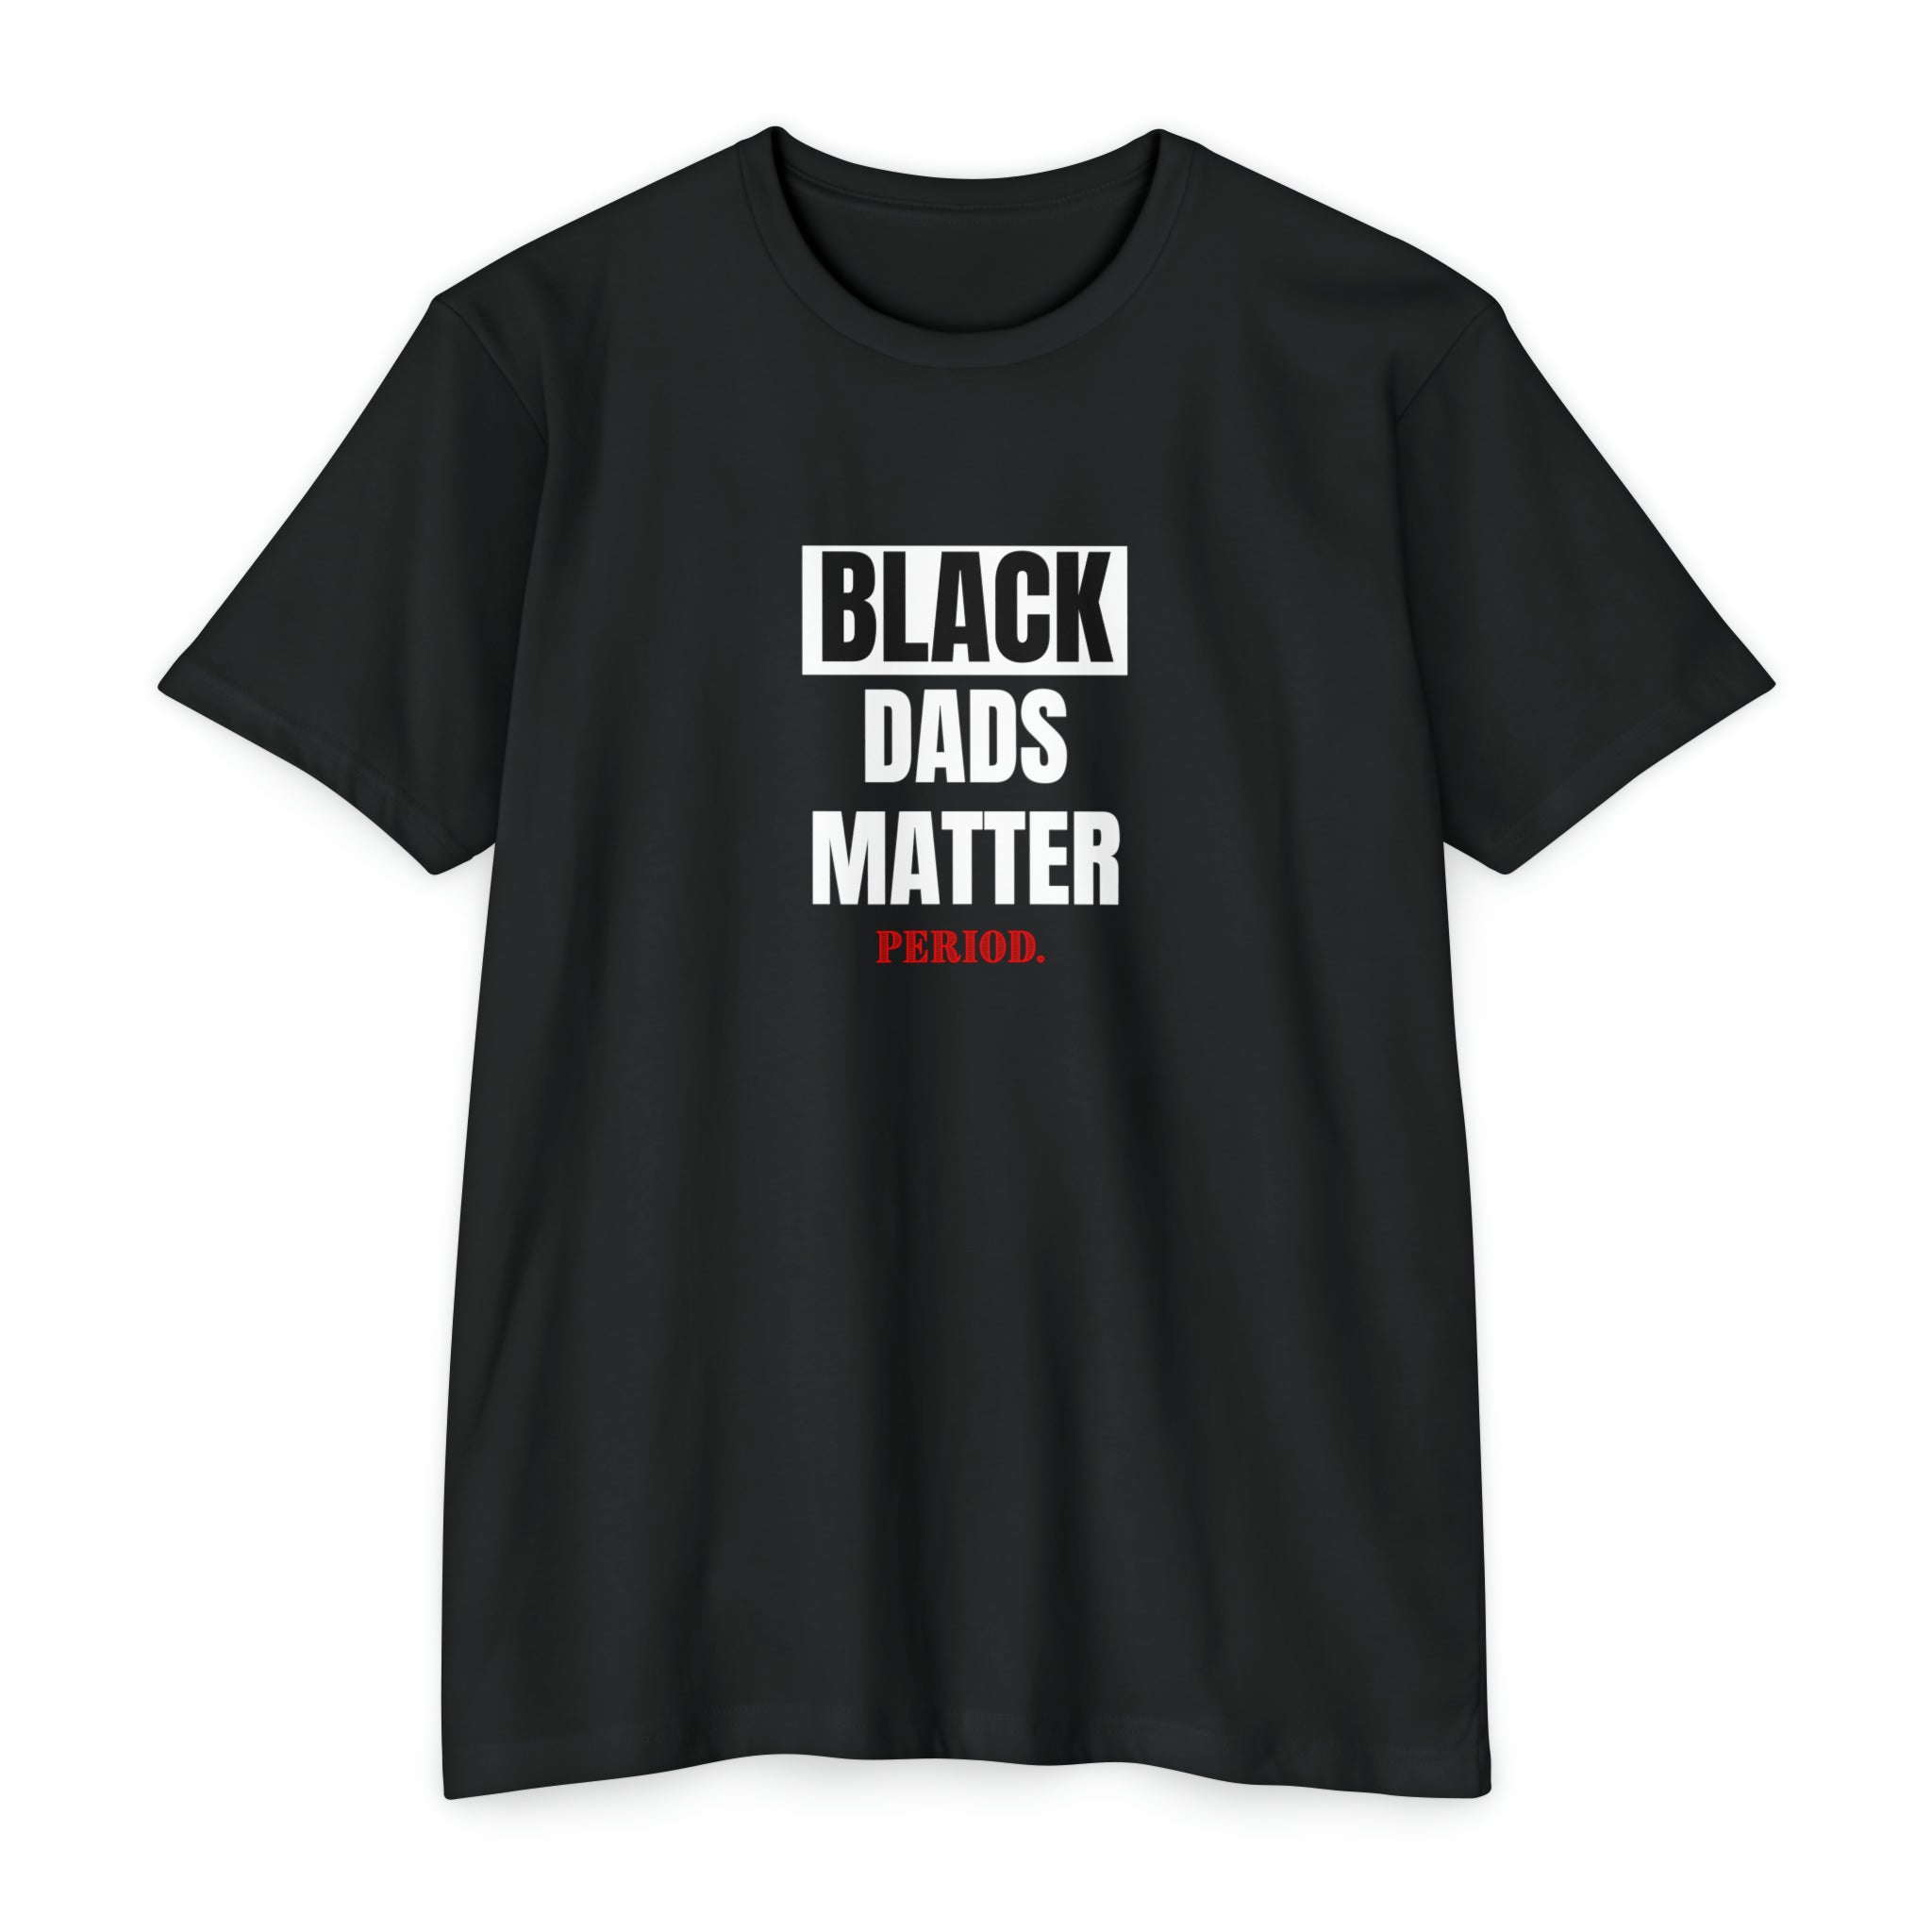 “Black Dads Matter” T-shirt